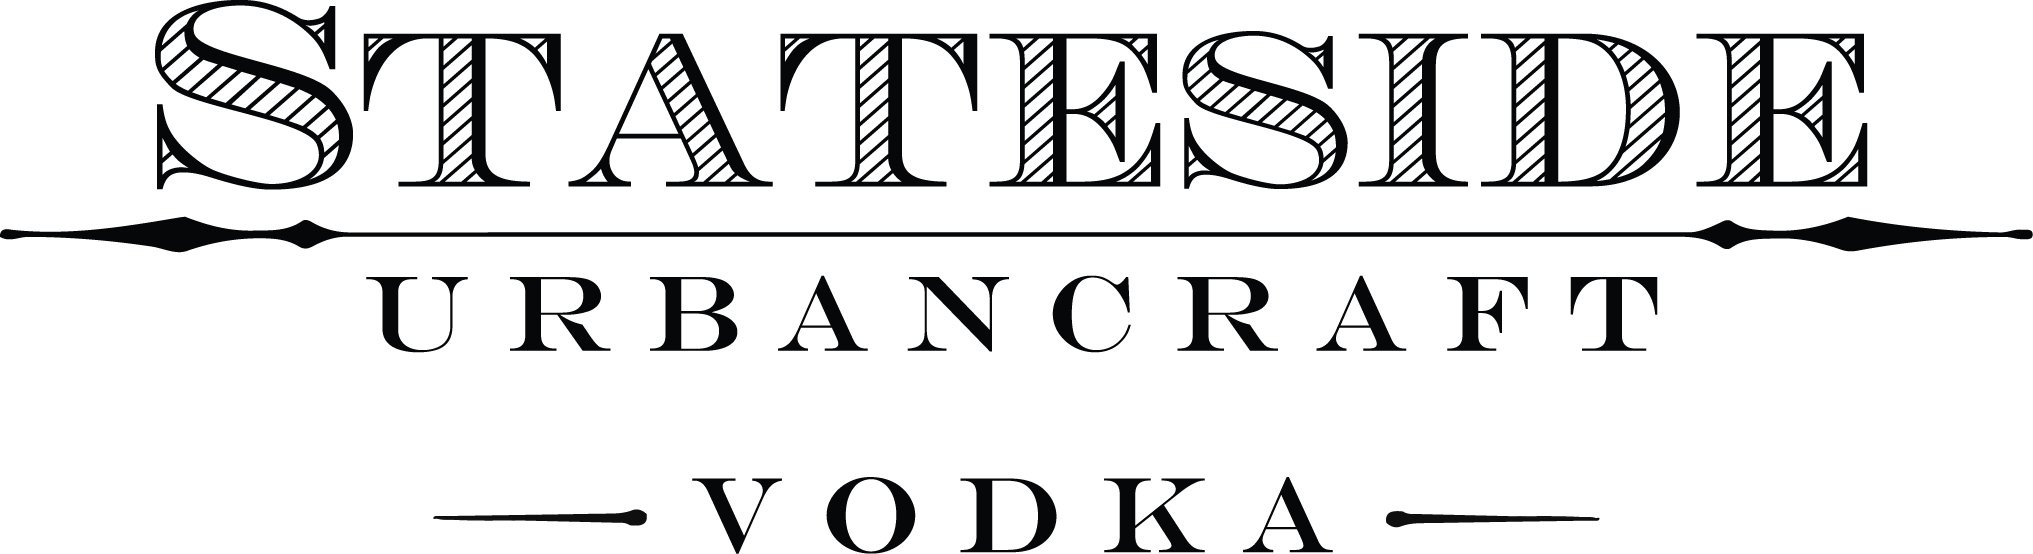 Stateside Vodka